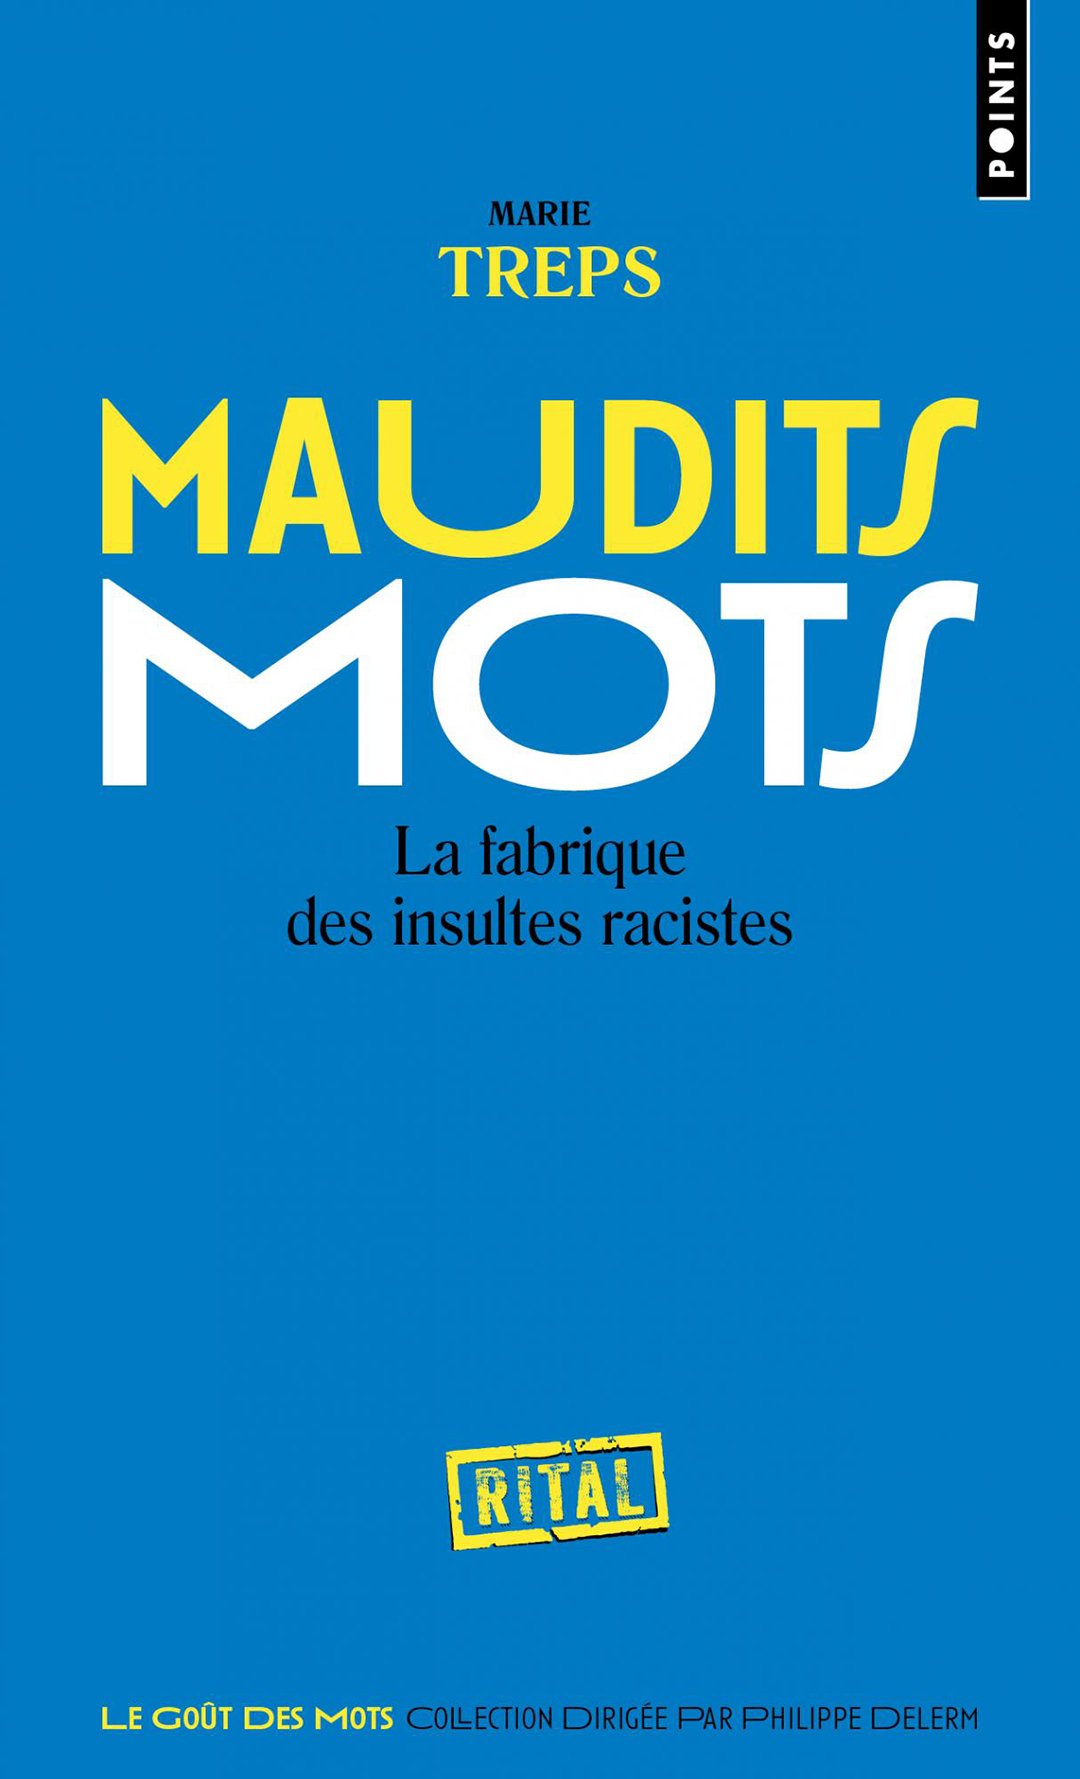 « Maudits mots : la fabrique des insultes racistes », de Marie Treps, est paru chez Points Seuil (360 pages, 7,90 euros).